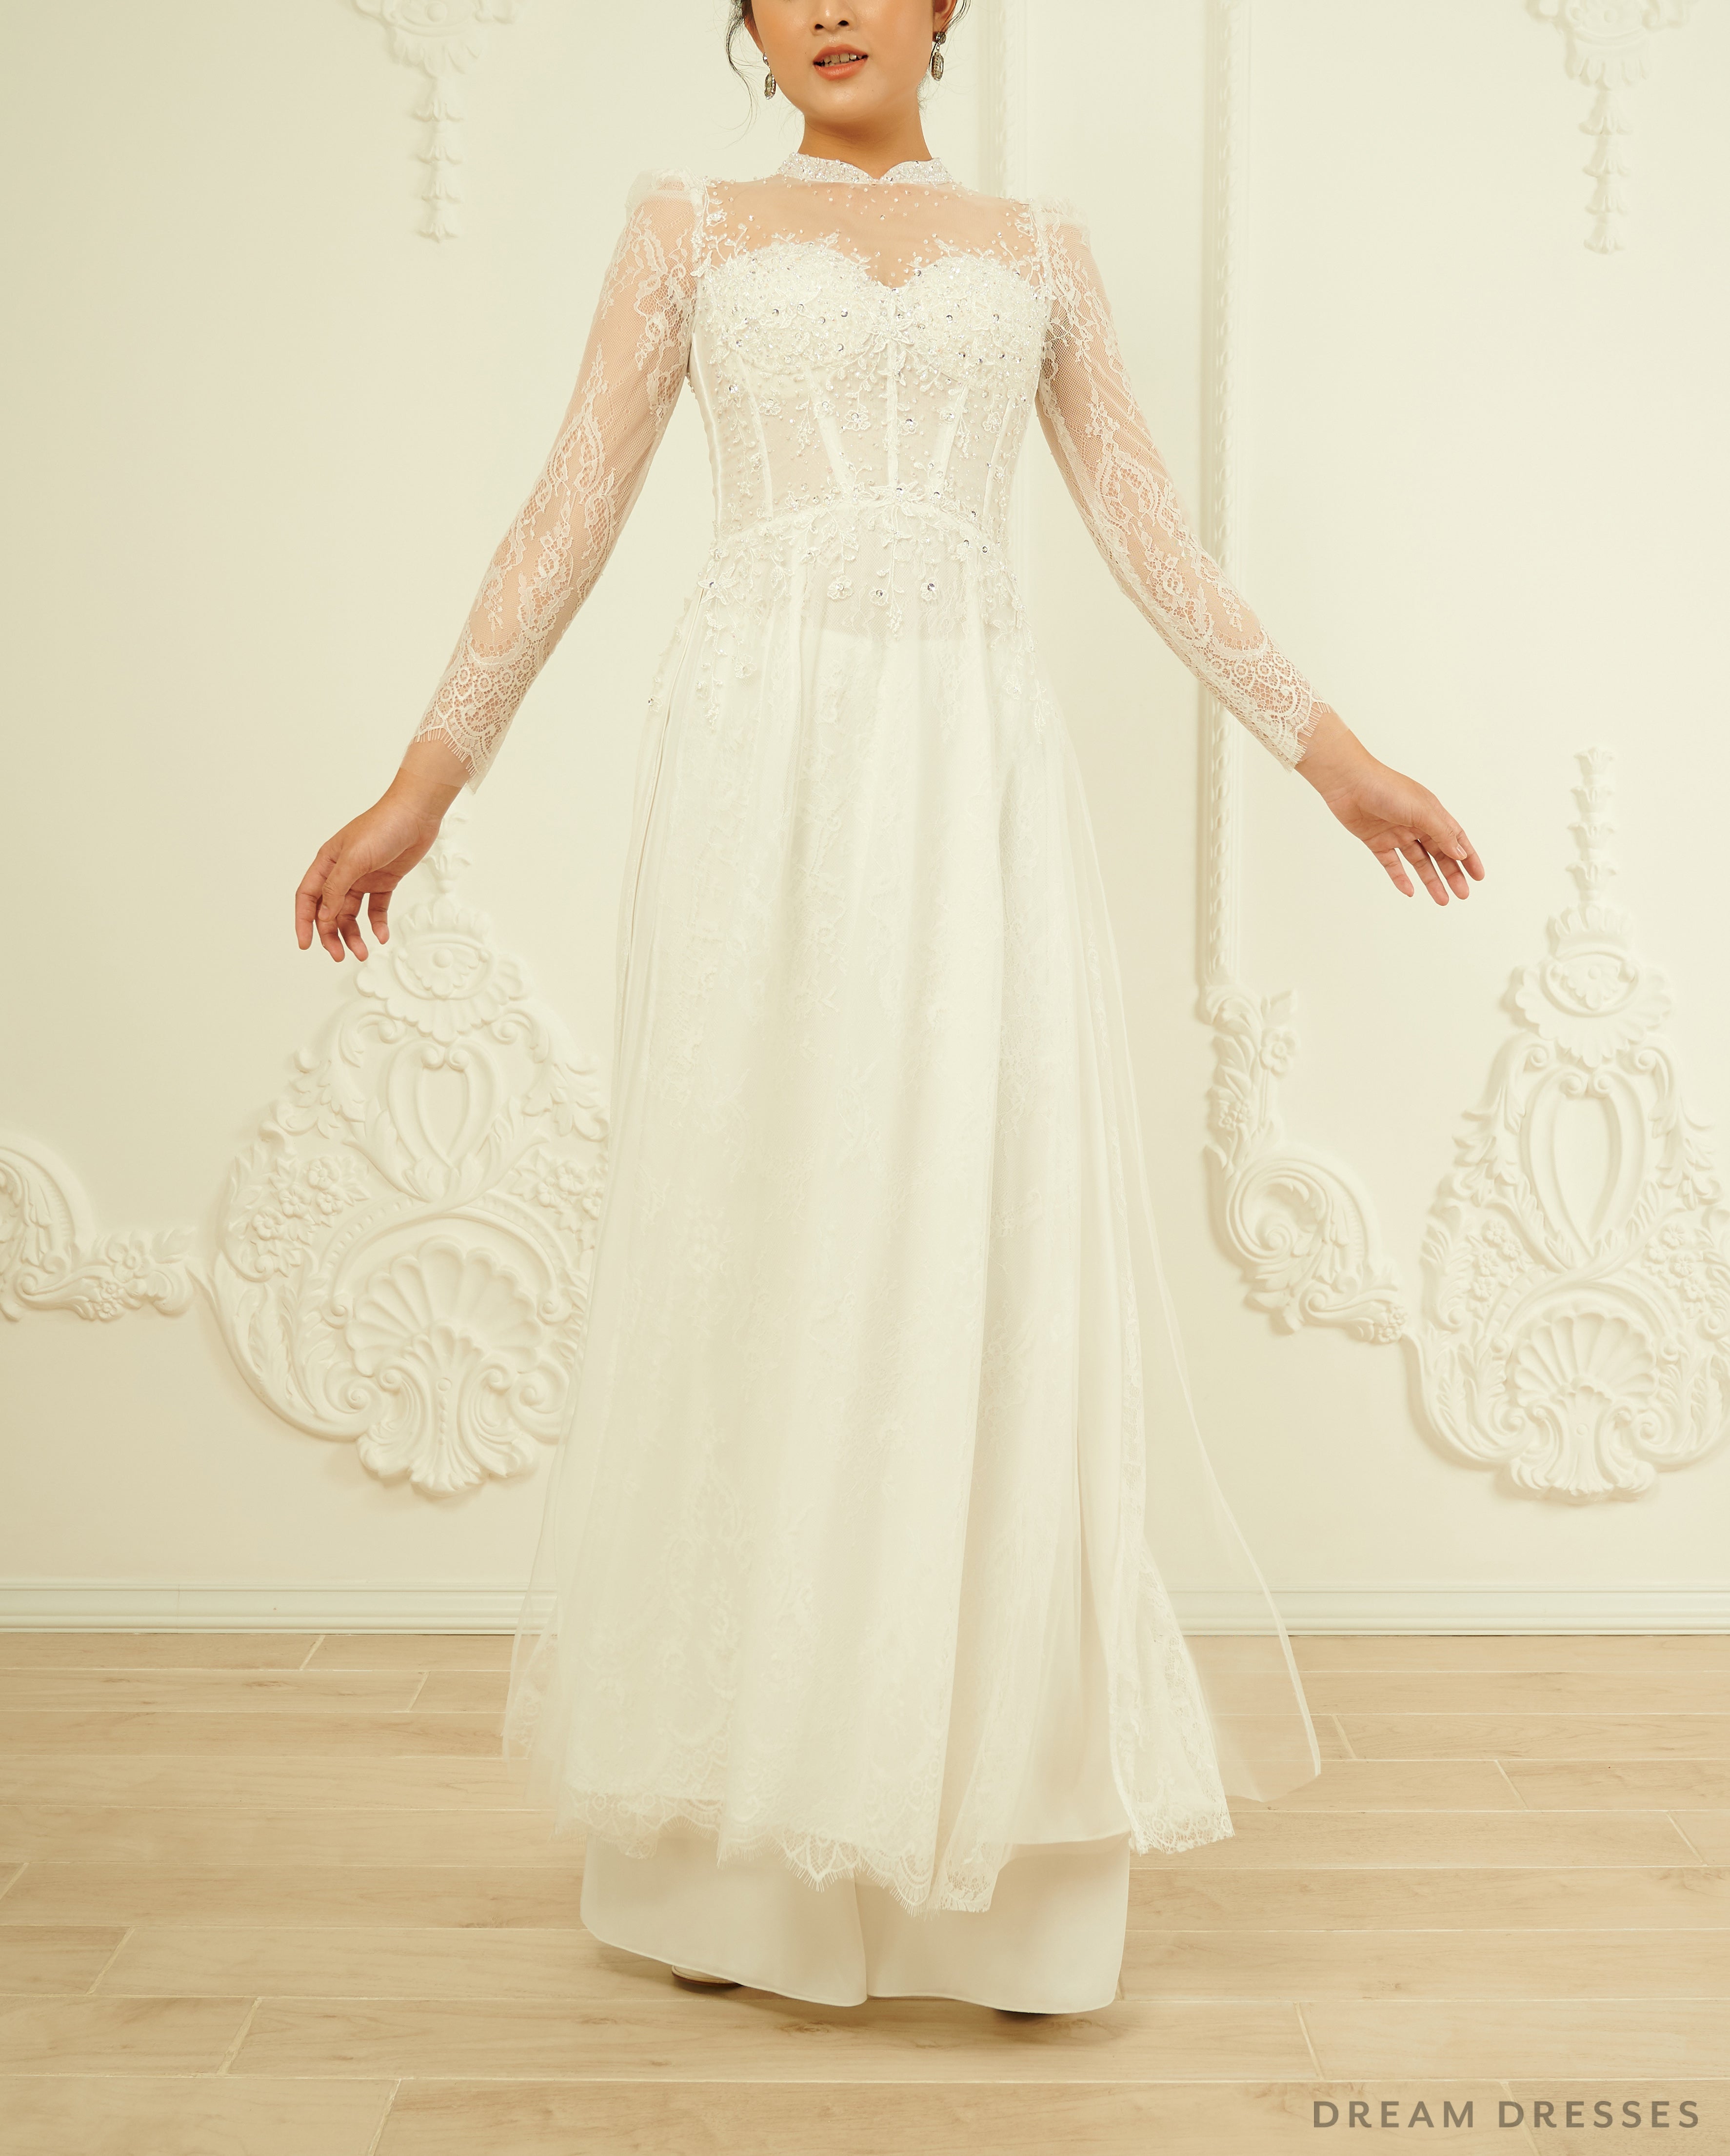 White Bridal Ao Dai | Lace Vietnamese Wedding Dress (#ILARIA)